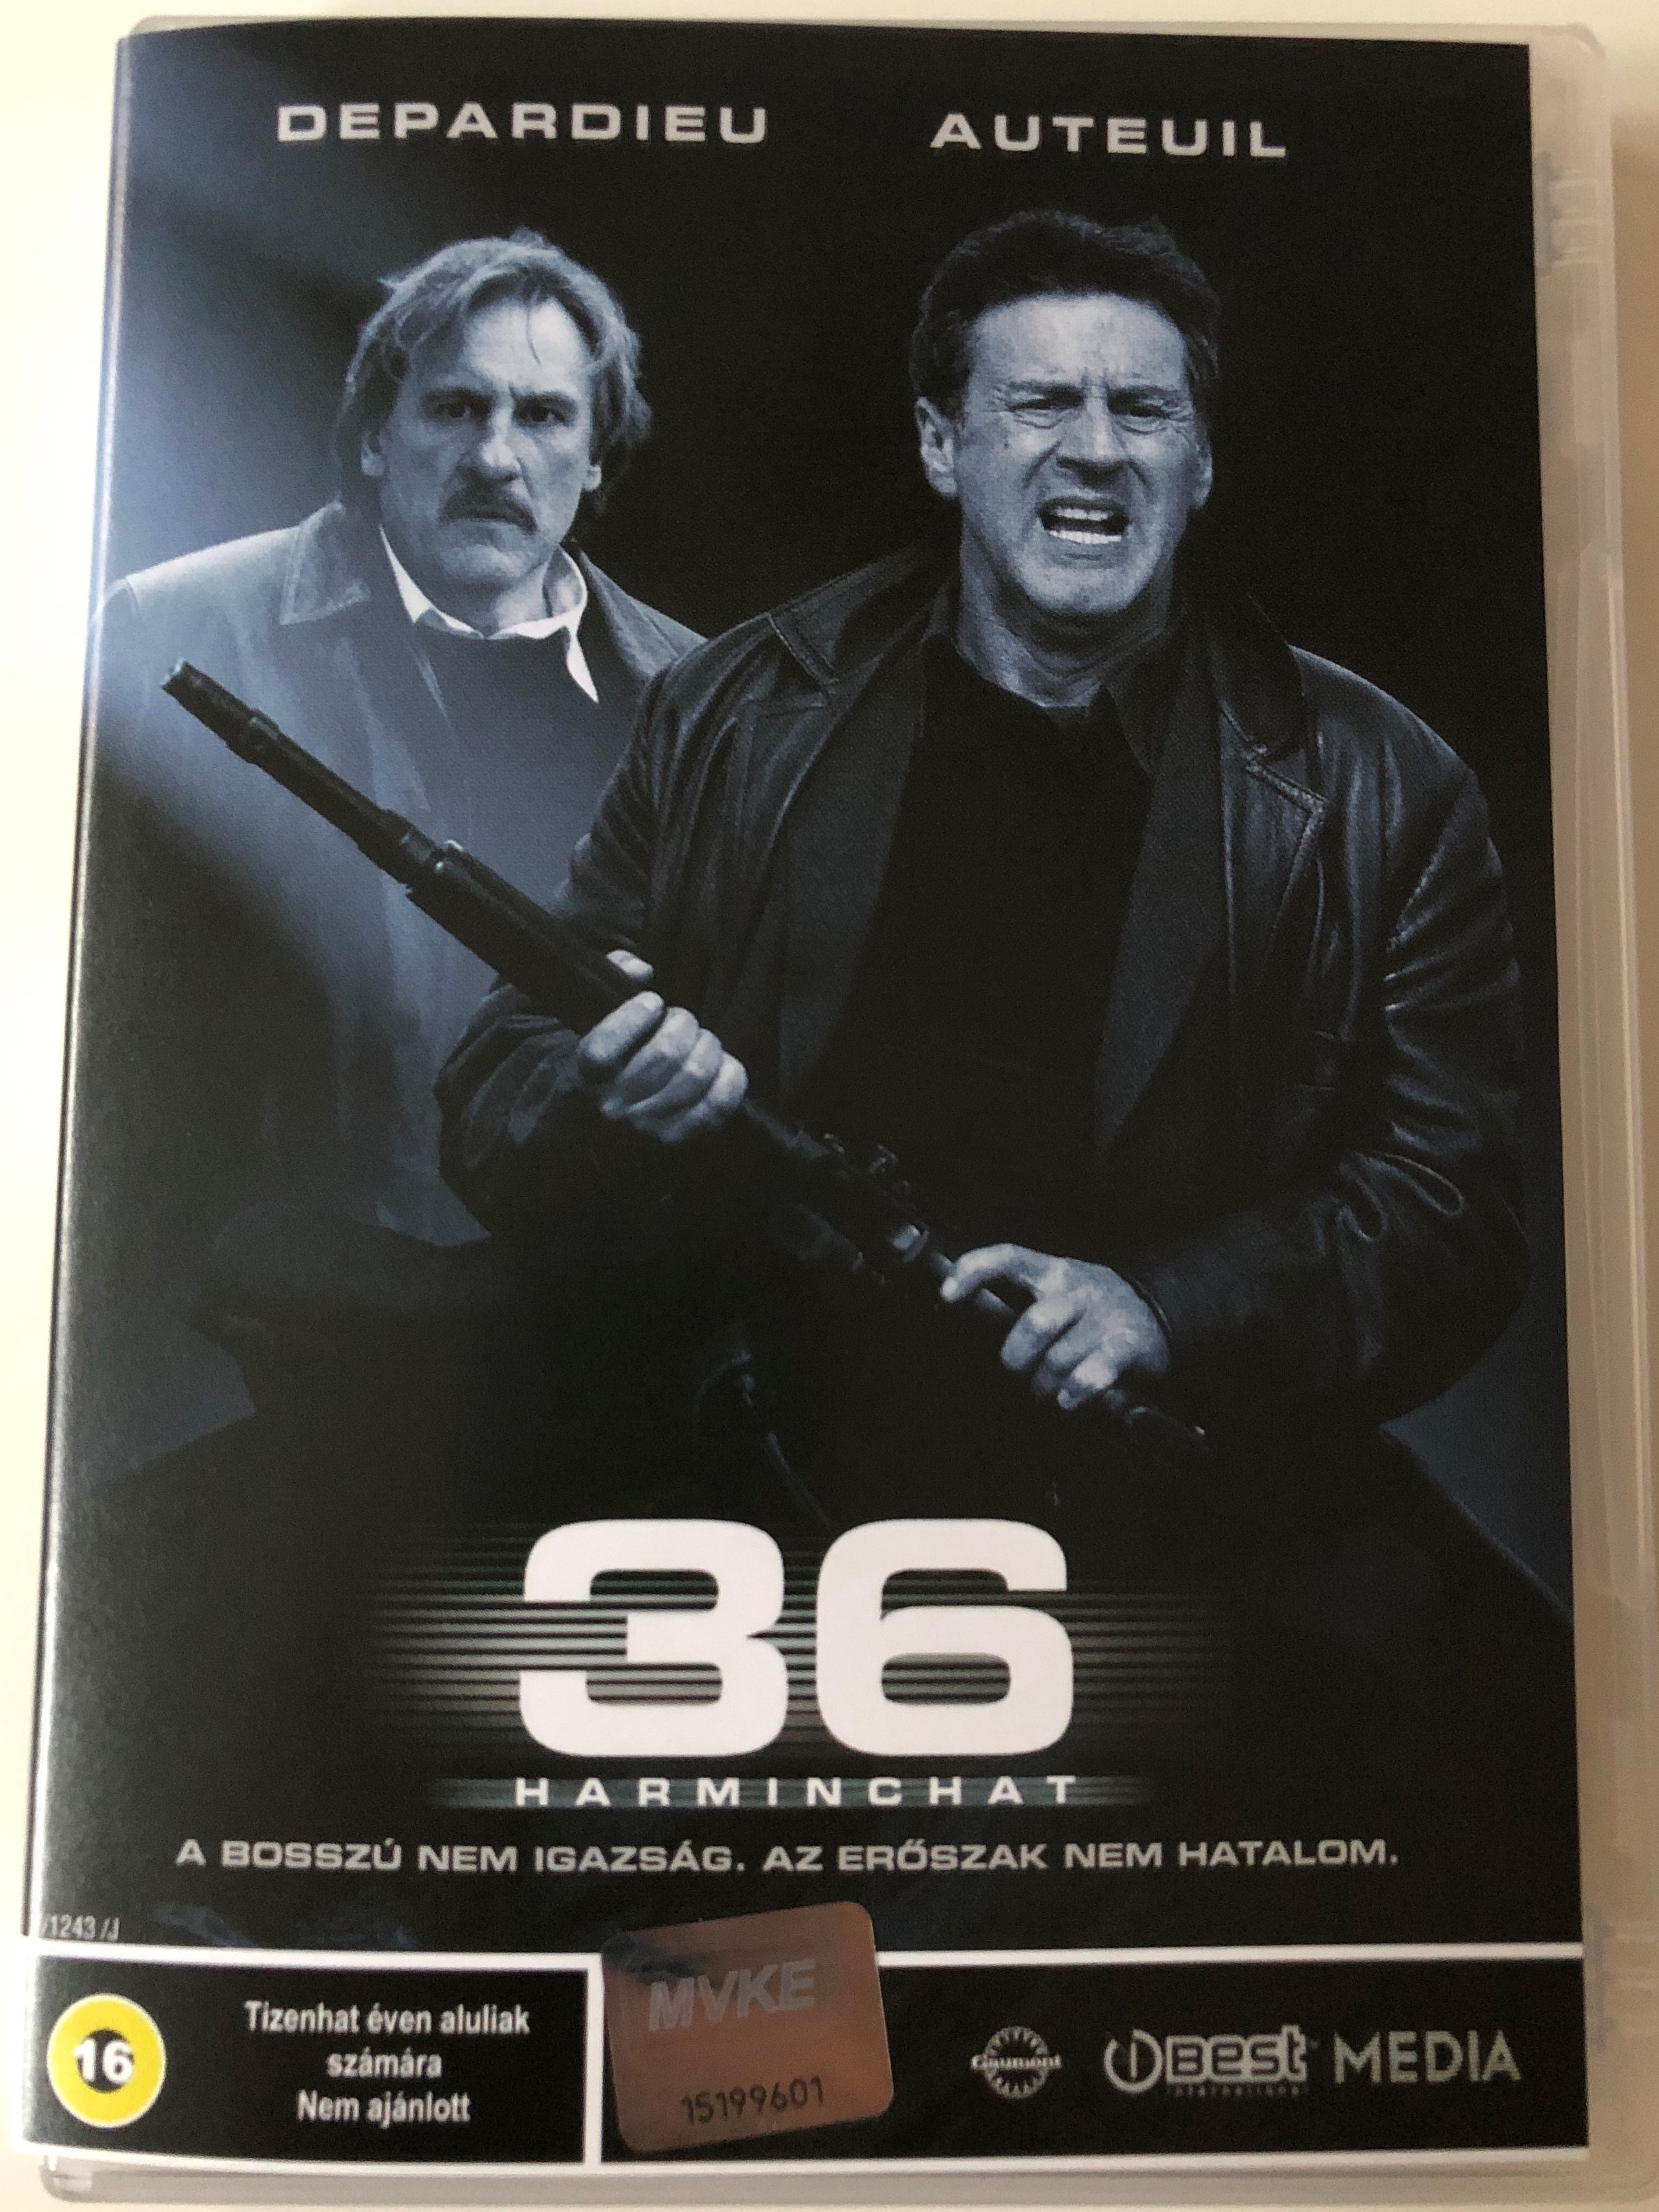 36 DVD 2005 Harminchat (36 Quai des Orfévres) / Directed by Olivier Marchal  / Starring: Daniel Auteuil, Gérard Depardieu, André Dussollier, Roschdy Zem  - bibleinmylanguage